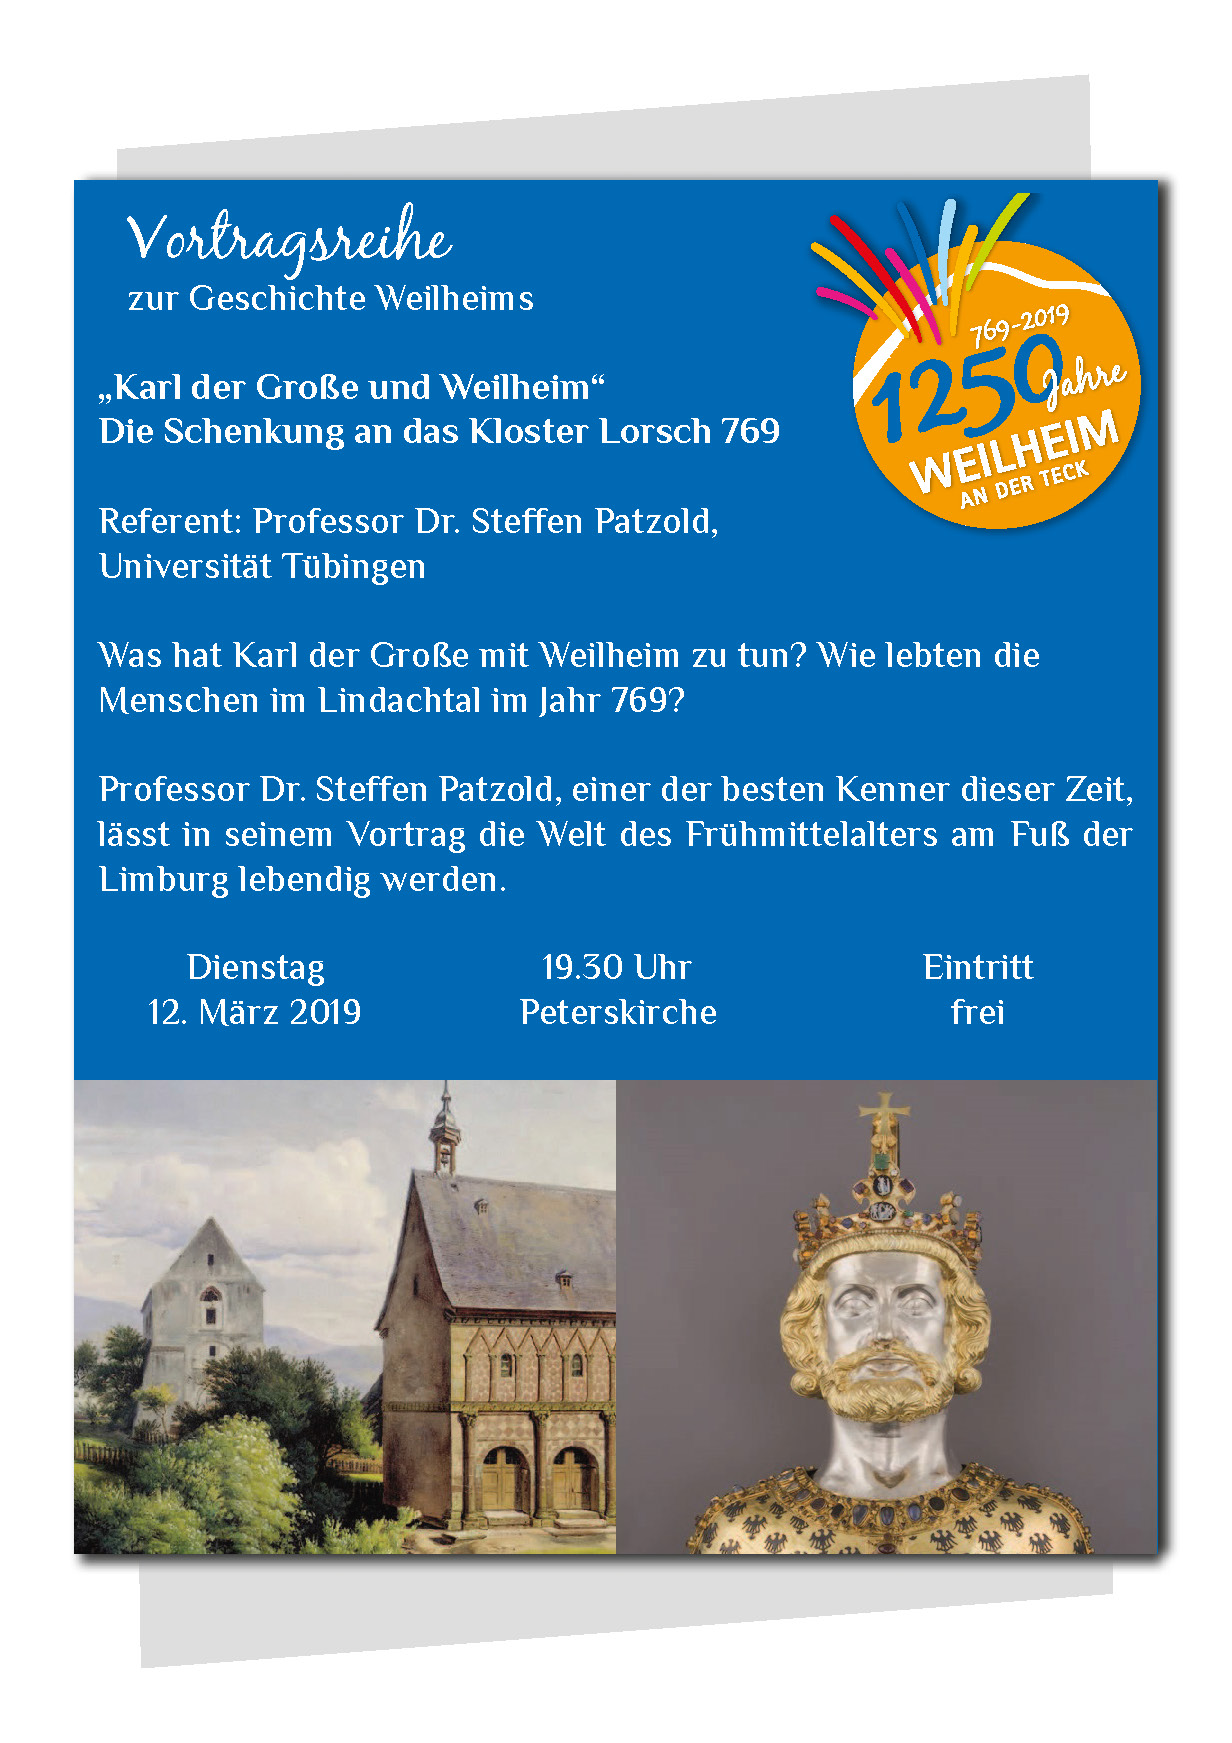  Plakat Vortragsreihe zur Geschichte Weilheims 